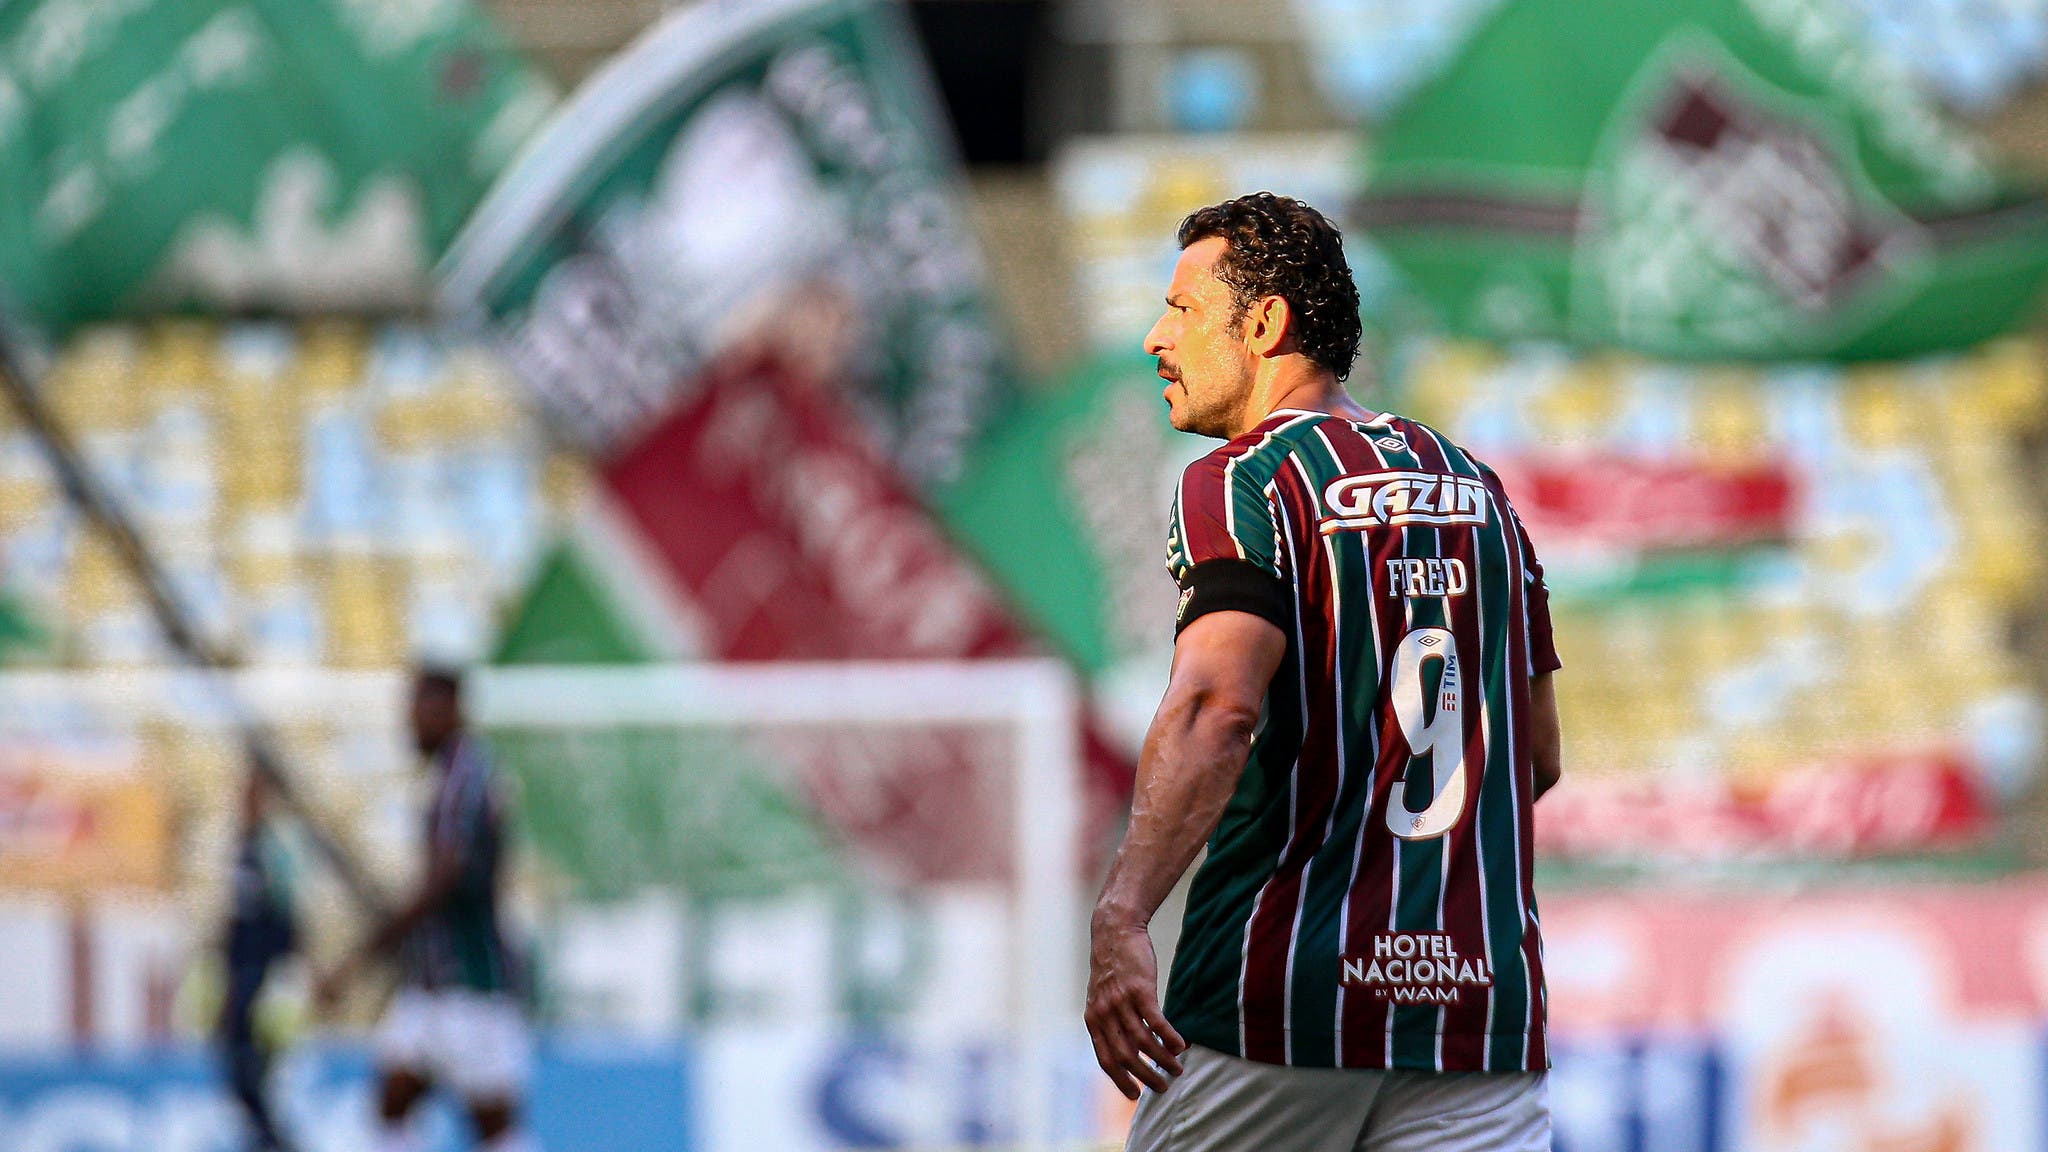 Fred Comemora Após Atingir Marca Histórica No Brasileiro Fluminense Últimas Notícias Vídeos 